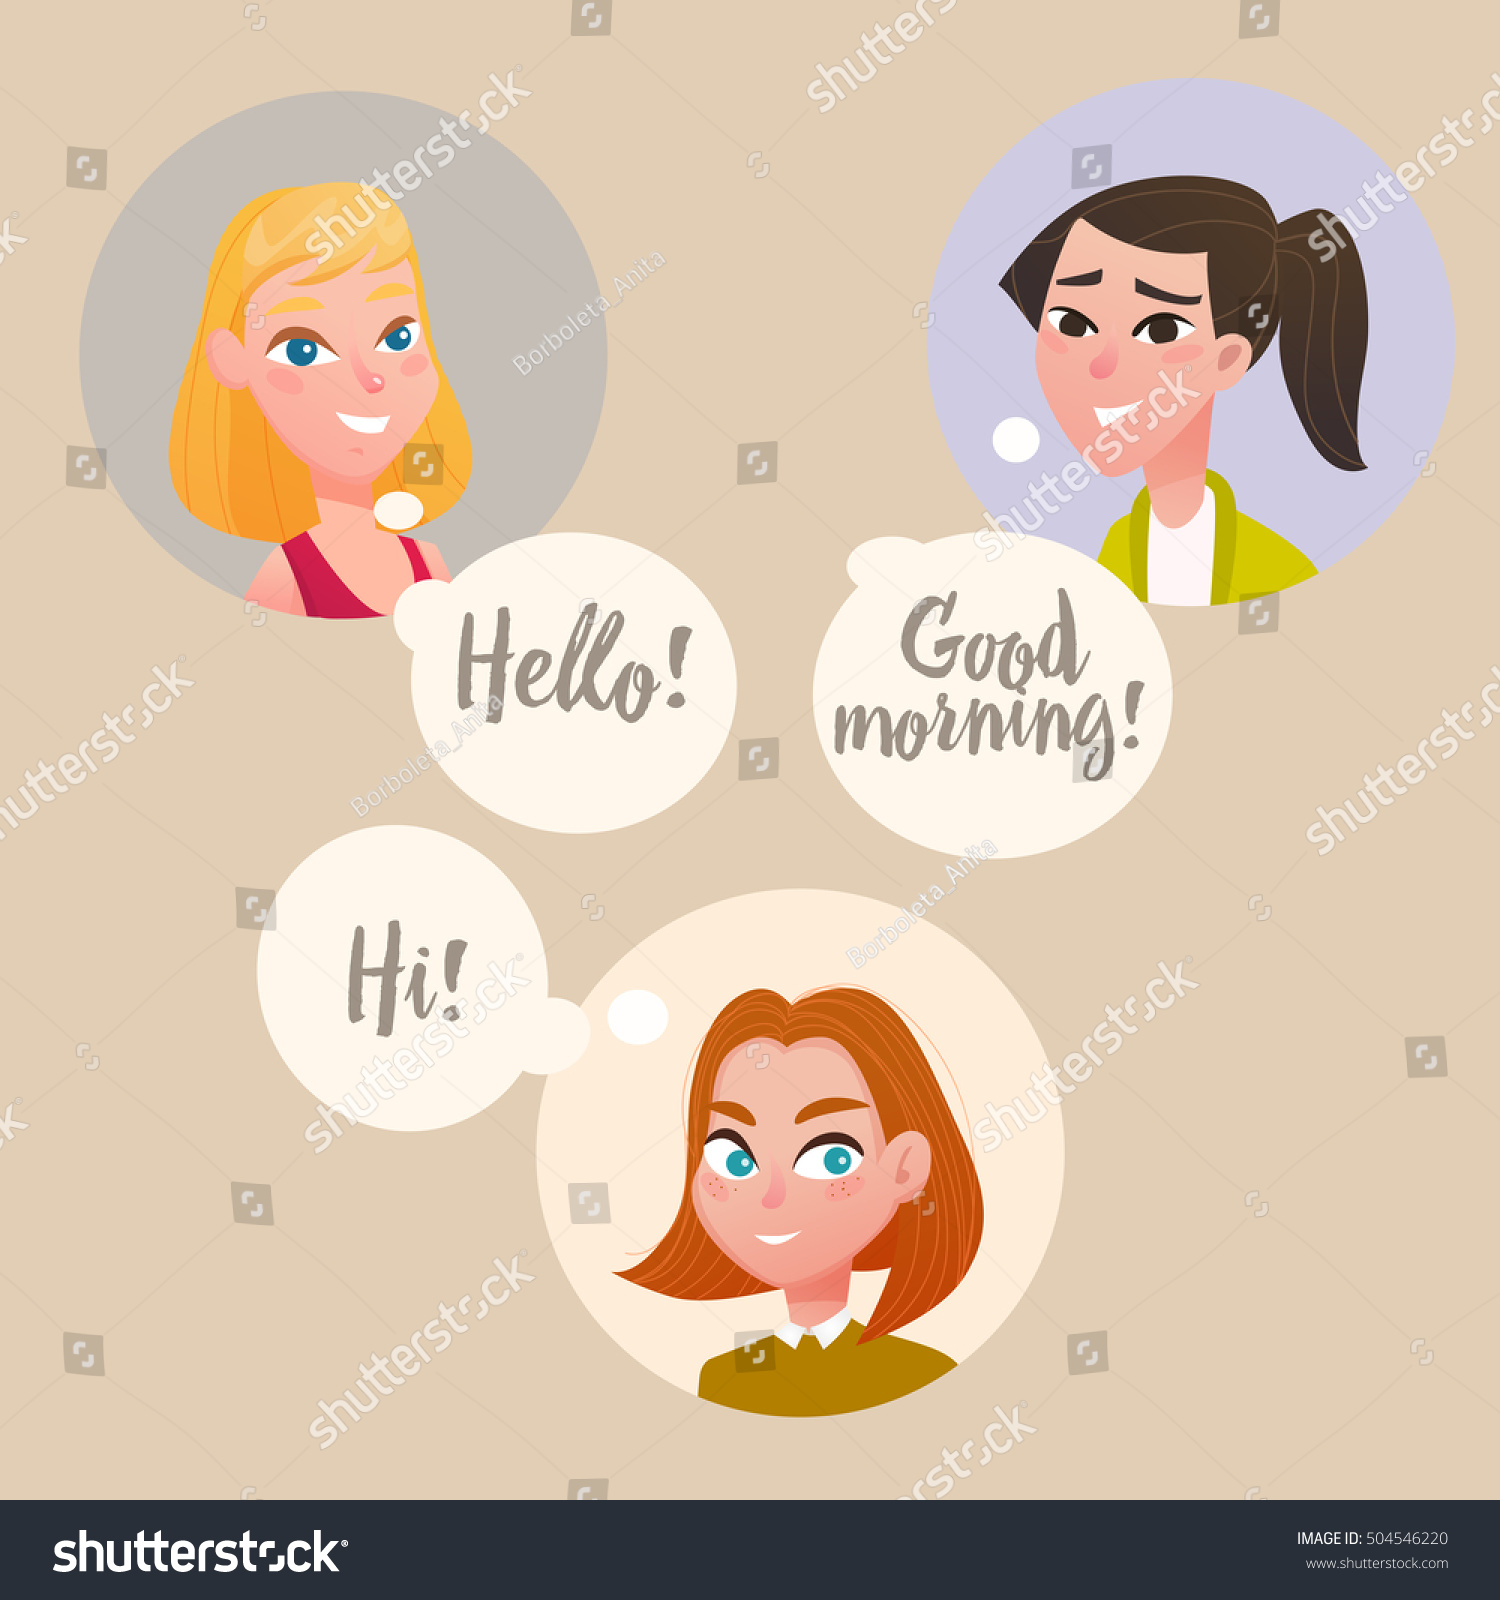 Three Girls Talking Each Other Vector Vector De Stock Libre De Regalías 504546220 Shutterstock